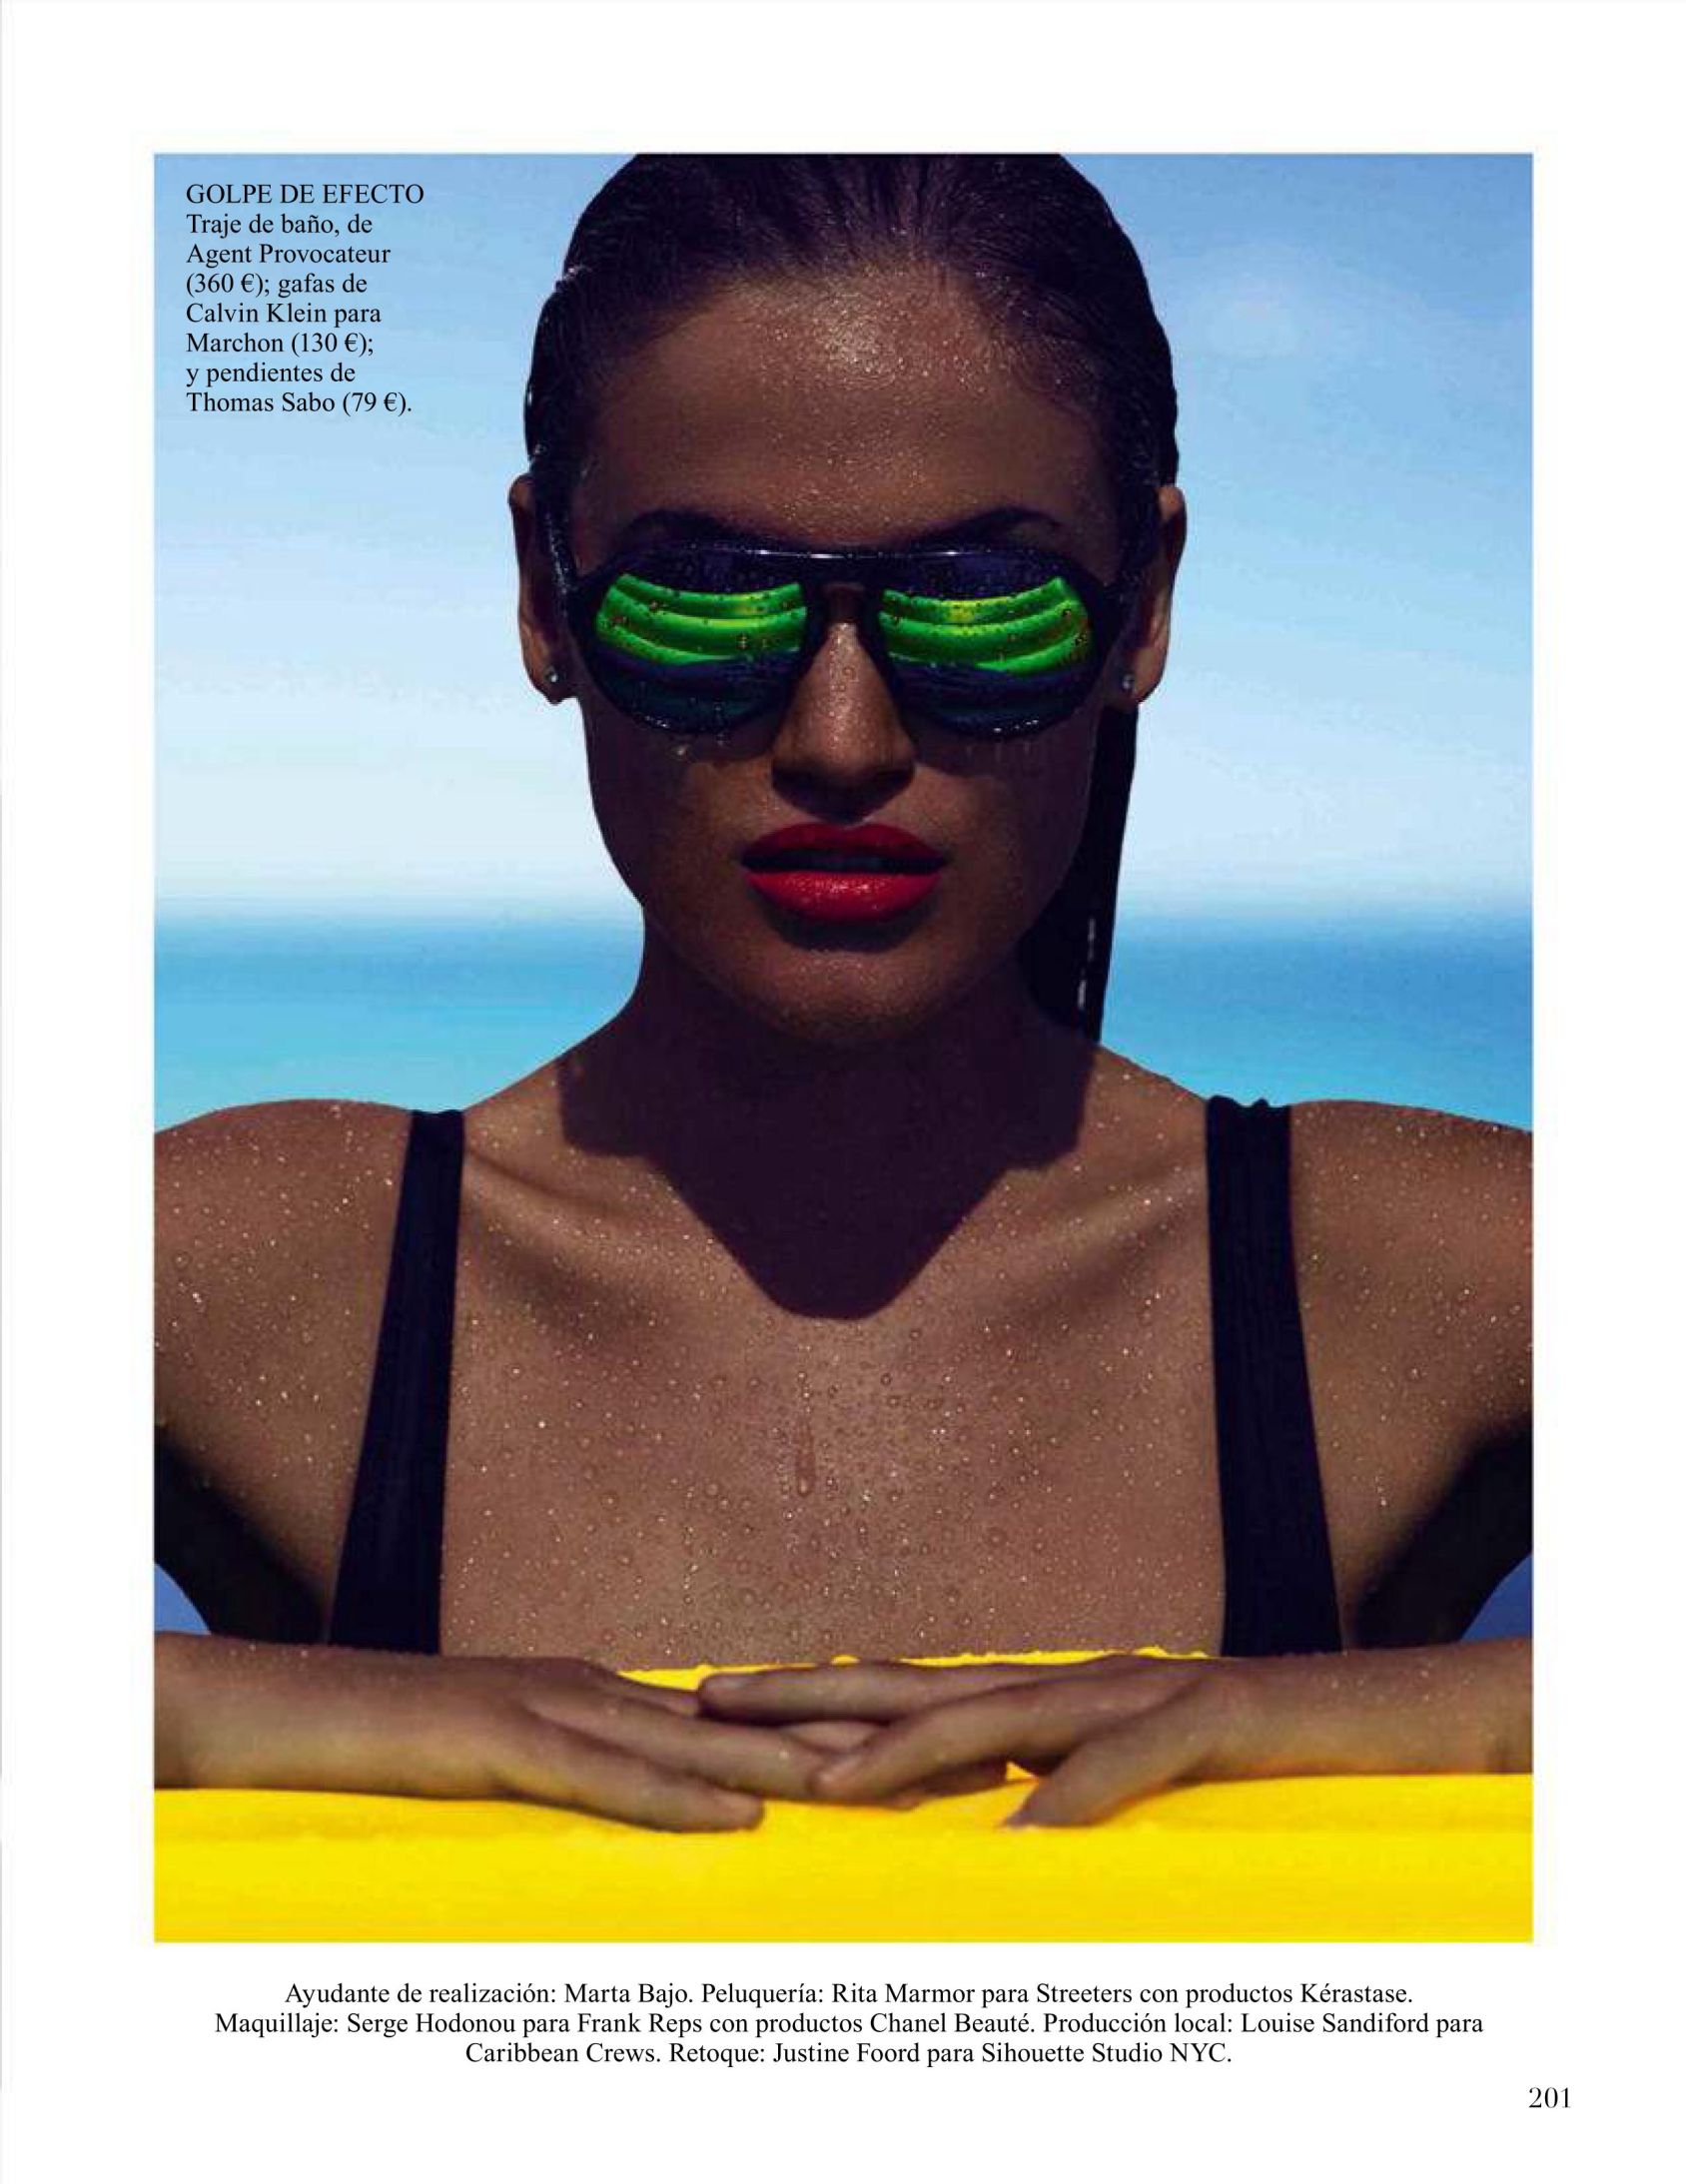 Sonya Gorelova for Vogue Magazine Spain